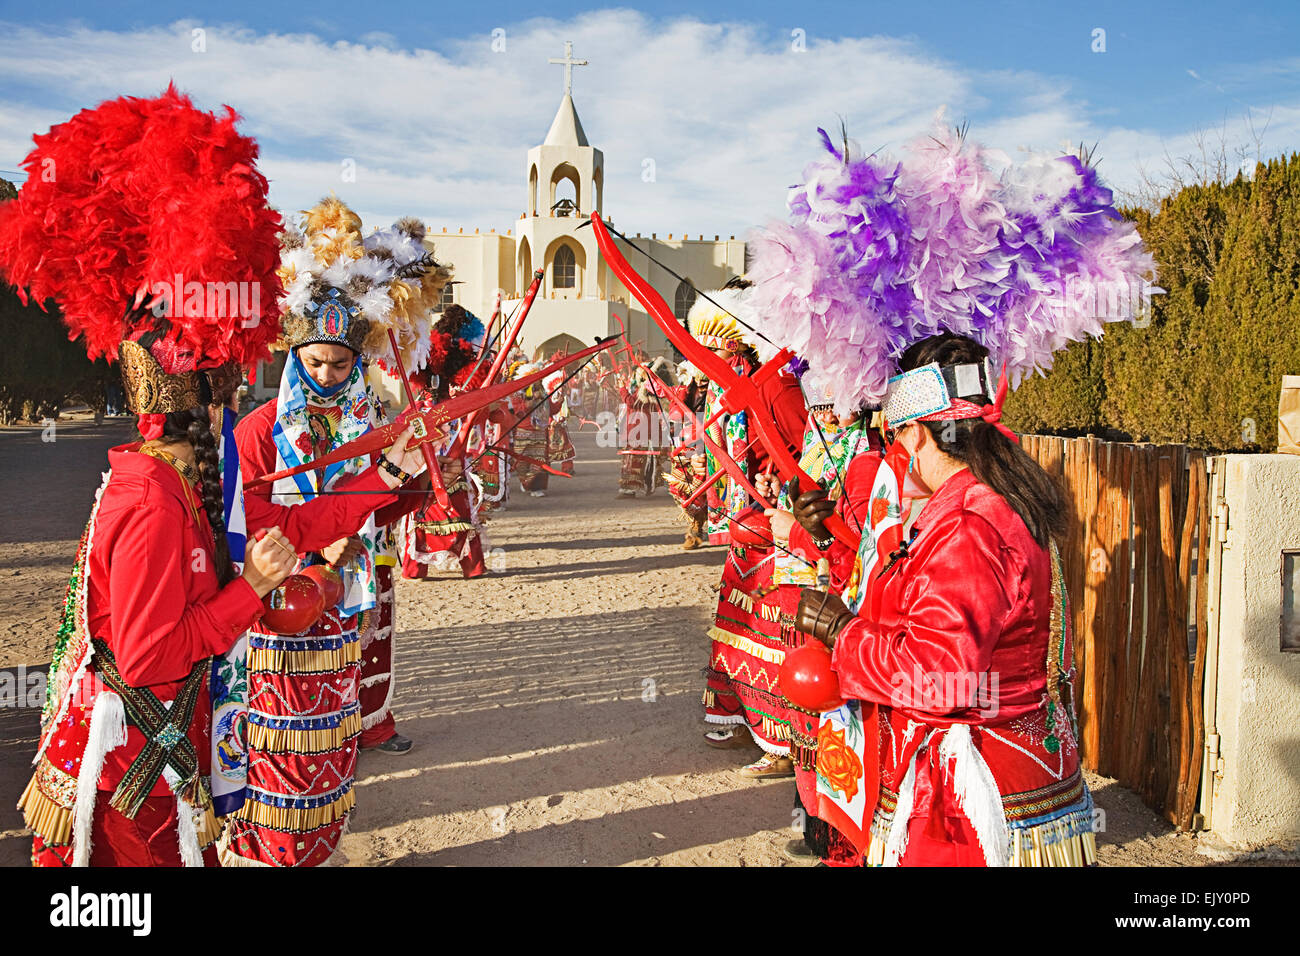 Le village de Tortugas près de Las Cruces au Nouveau Mexique célèbre la Vierge de Guadalupe Fête avec danses colorées Banque D'Images